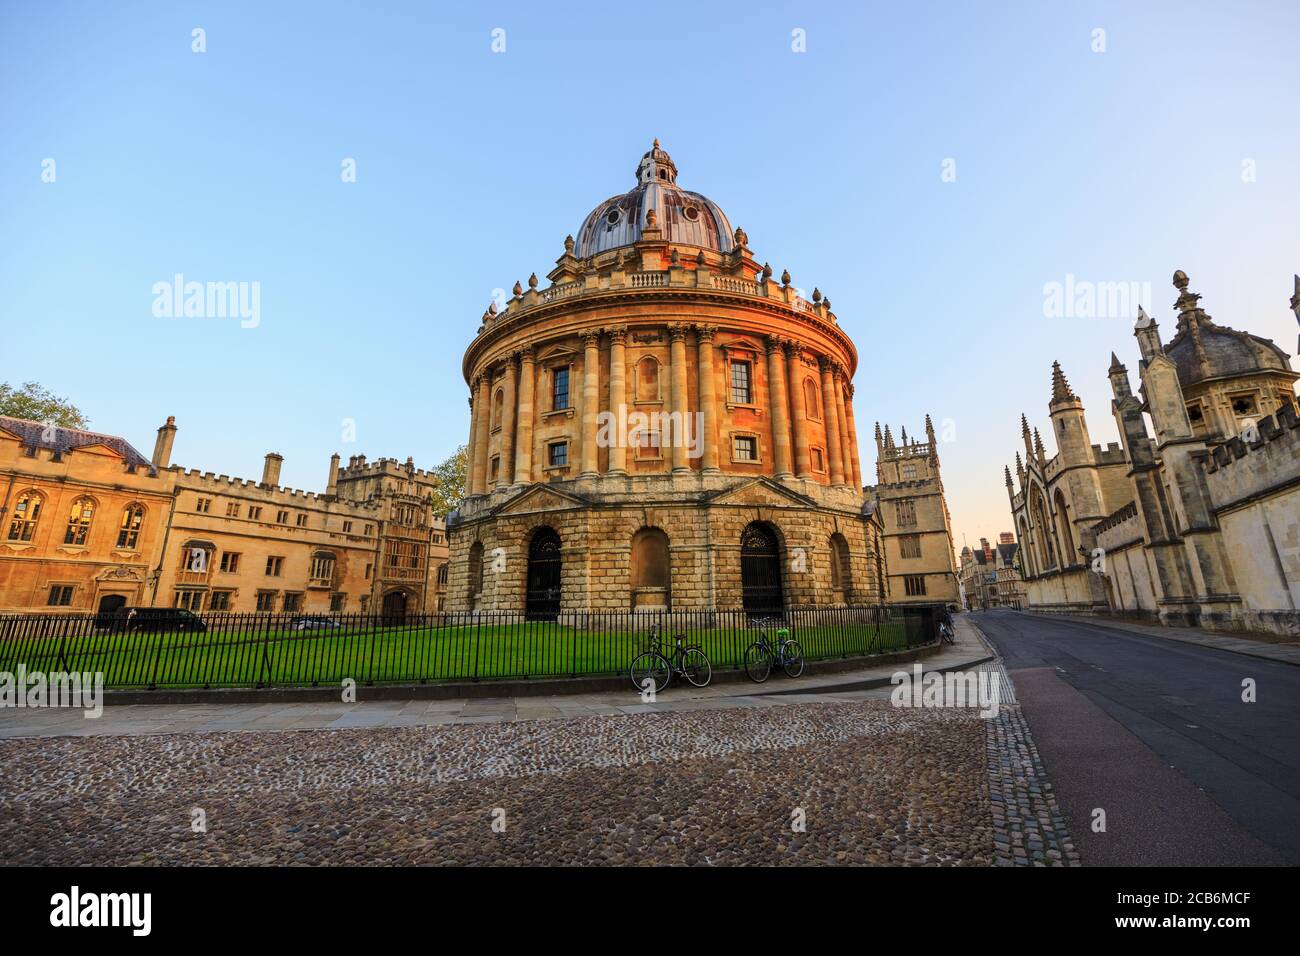 La Cámara Radcliffe en Oxford al amanecer sin gente alrededor, temprano en la mañana en un día claro con el cielo azul. Oxford, Inglaterra, Reino Unido. Foto de stock